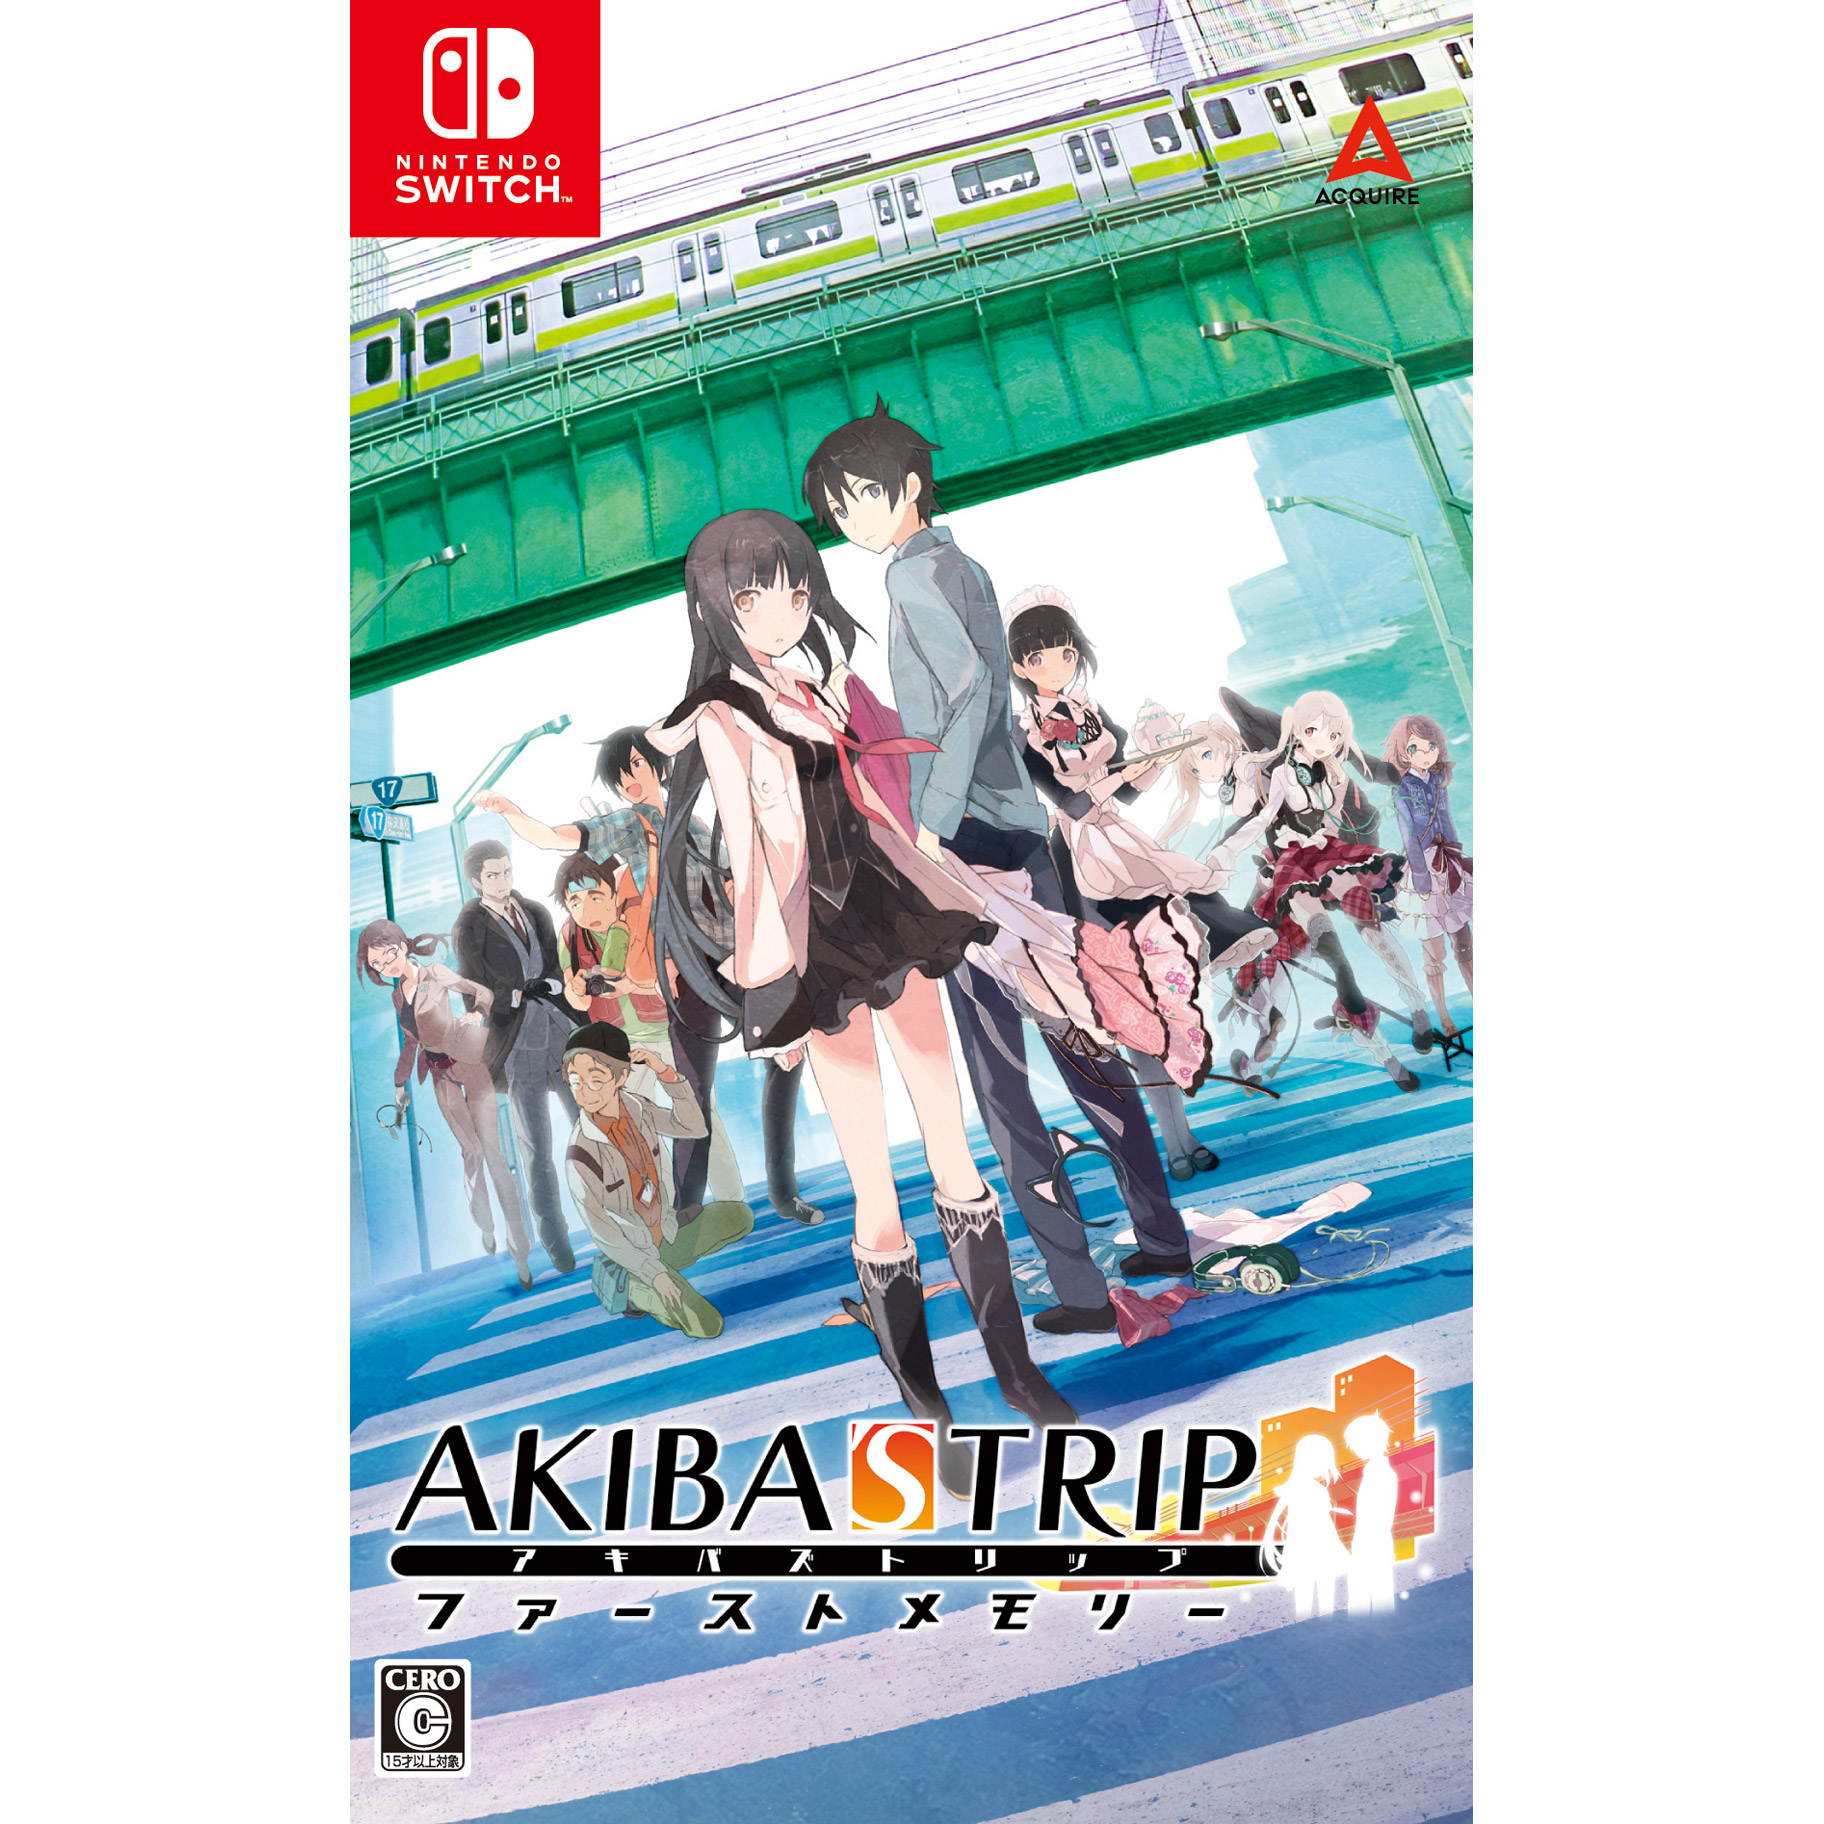 AKIBA’S TRIP ファーストメモリー 通常版 【Switchゲームソフト】【sof001】